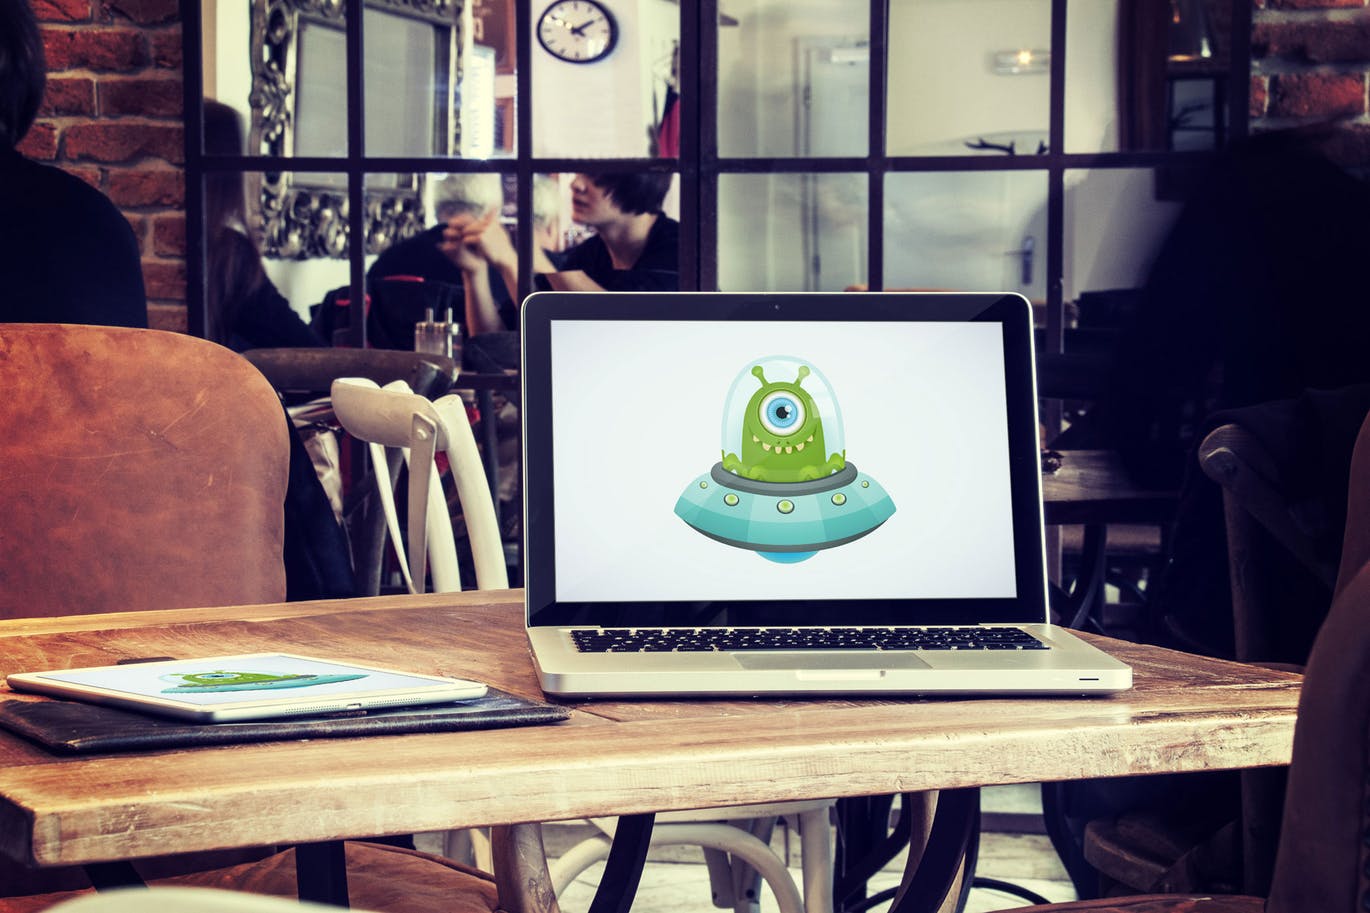 咖啡厅场景笔记本电脑&平板电脑屏幕预览第一素材精选样机v3 5 Laptop and tablet mock-ups in cafe Vol. 3插图(1)